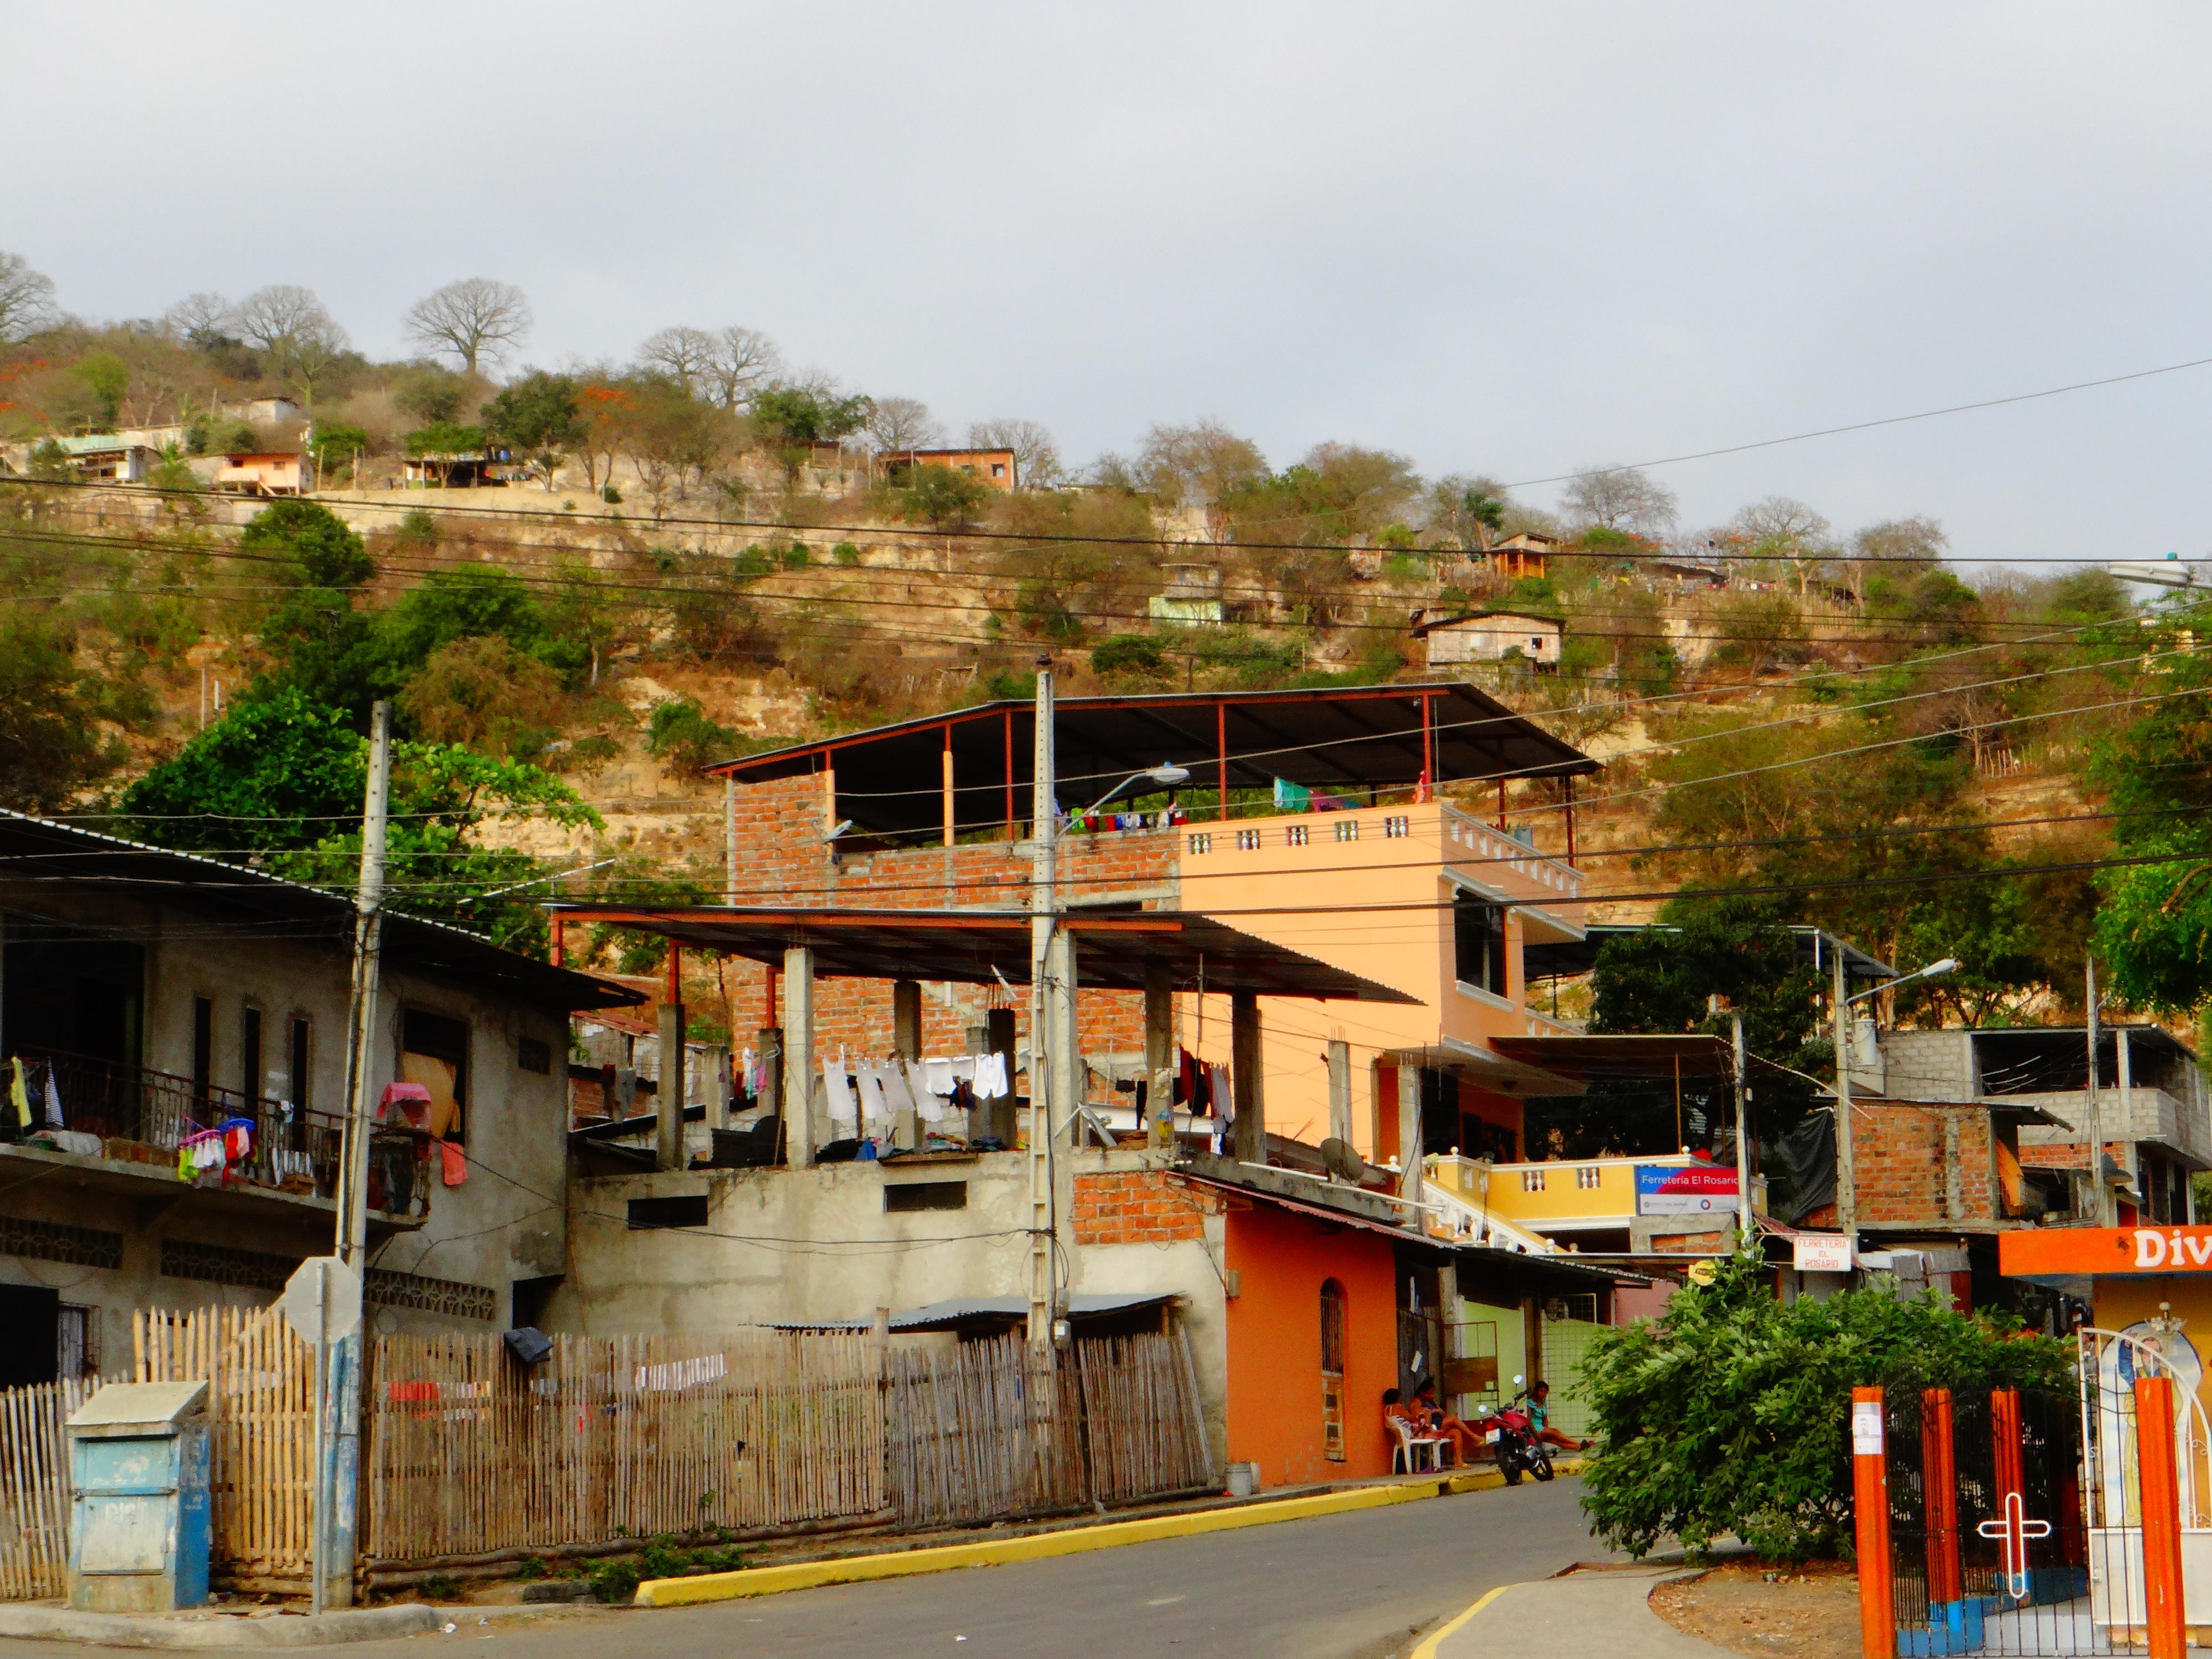 Houses in San Pablo, Ecuador